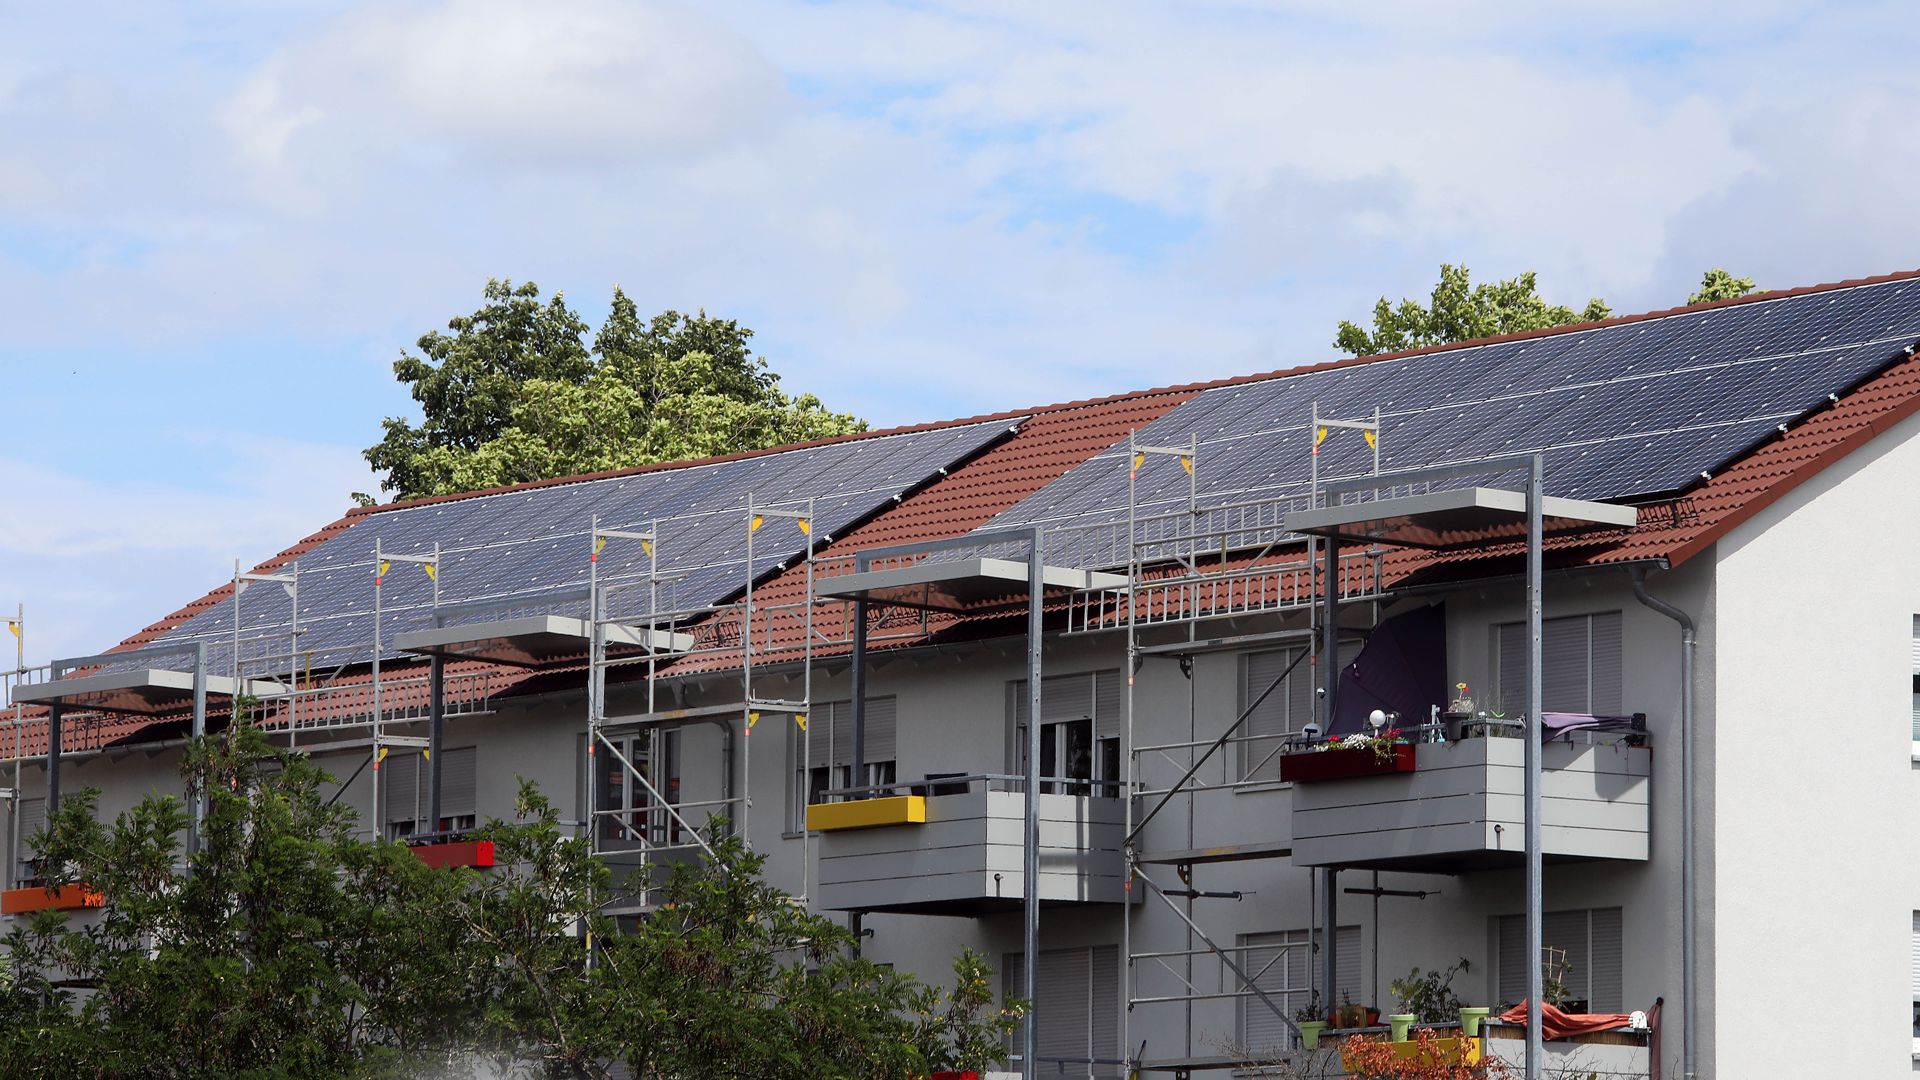 Neue Photovoltaik-Anlagen auf dem Dach eines Hauses in der Heilbronner Straße.